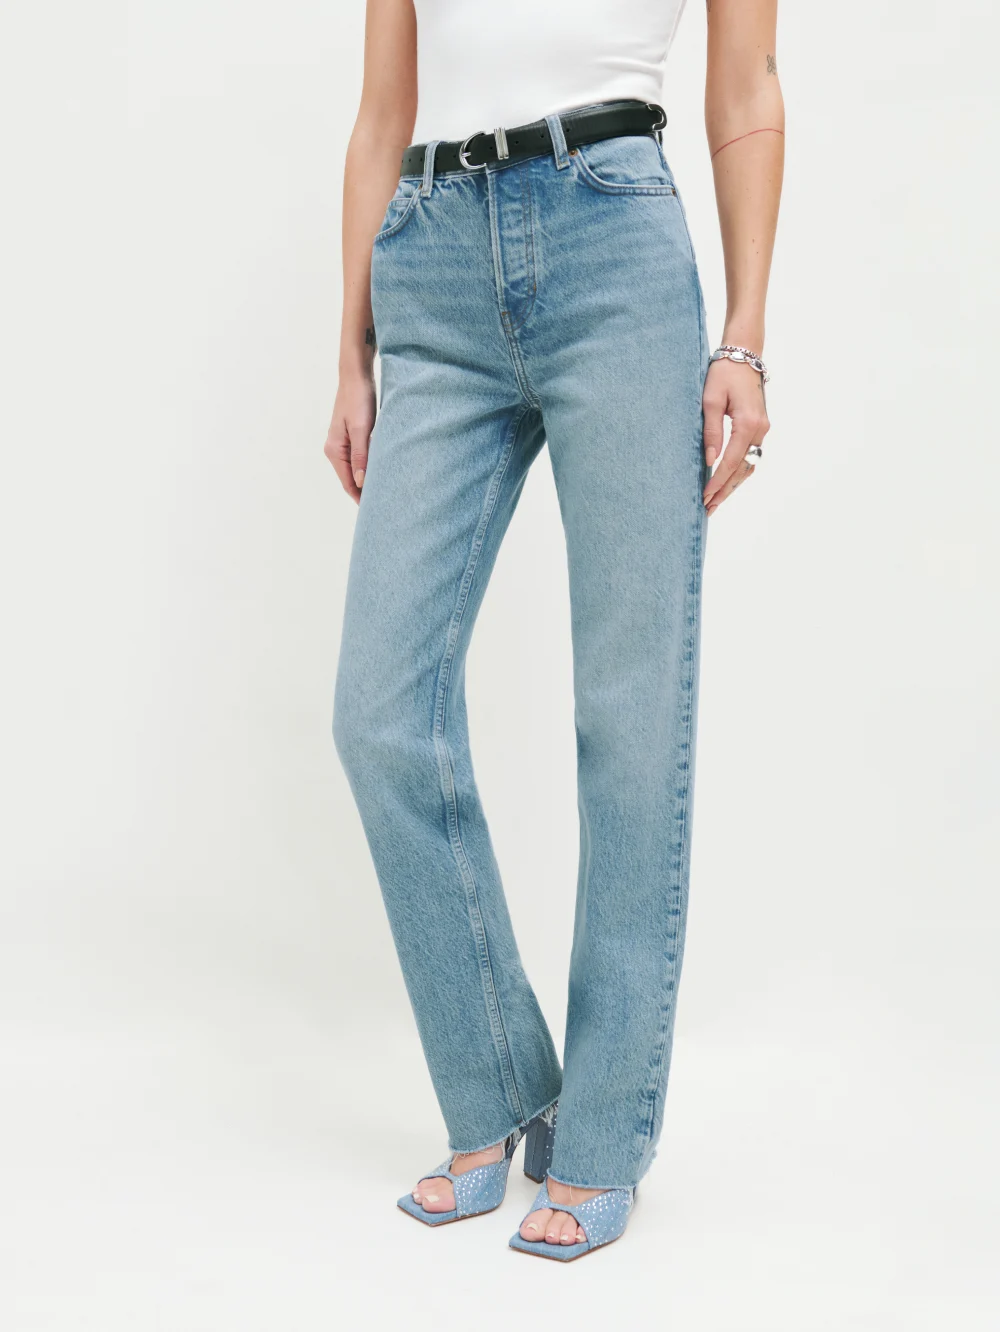 Styling Women's Jeans for Longer Legs